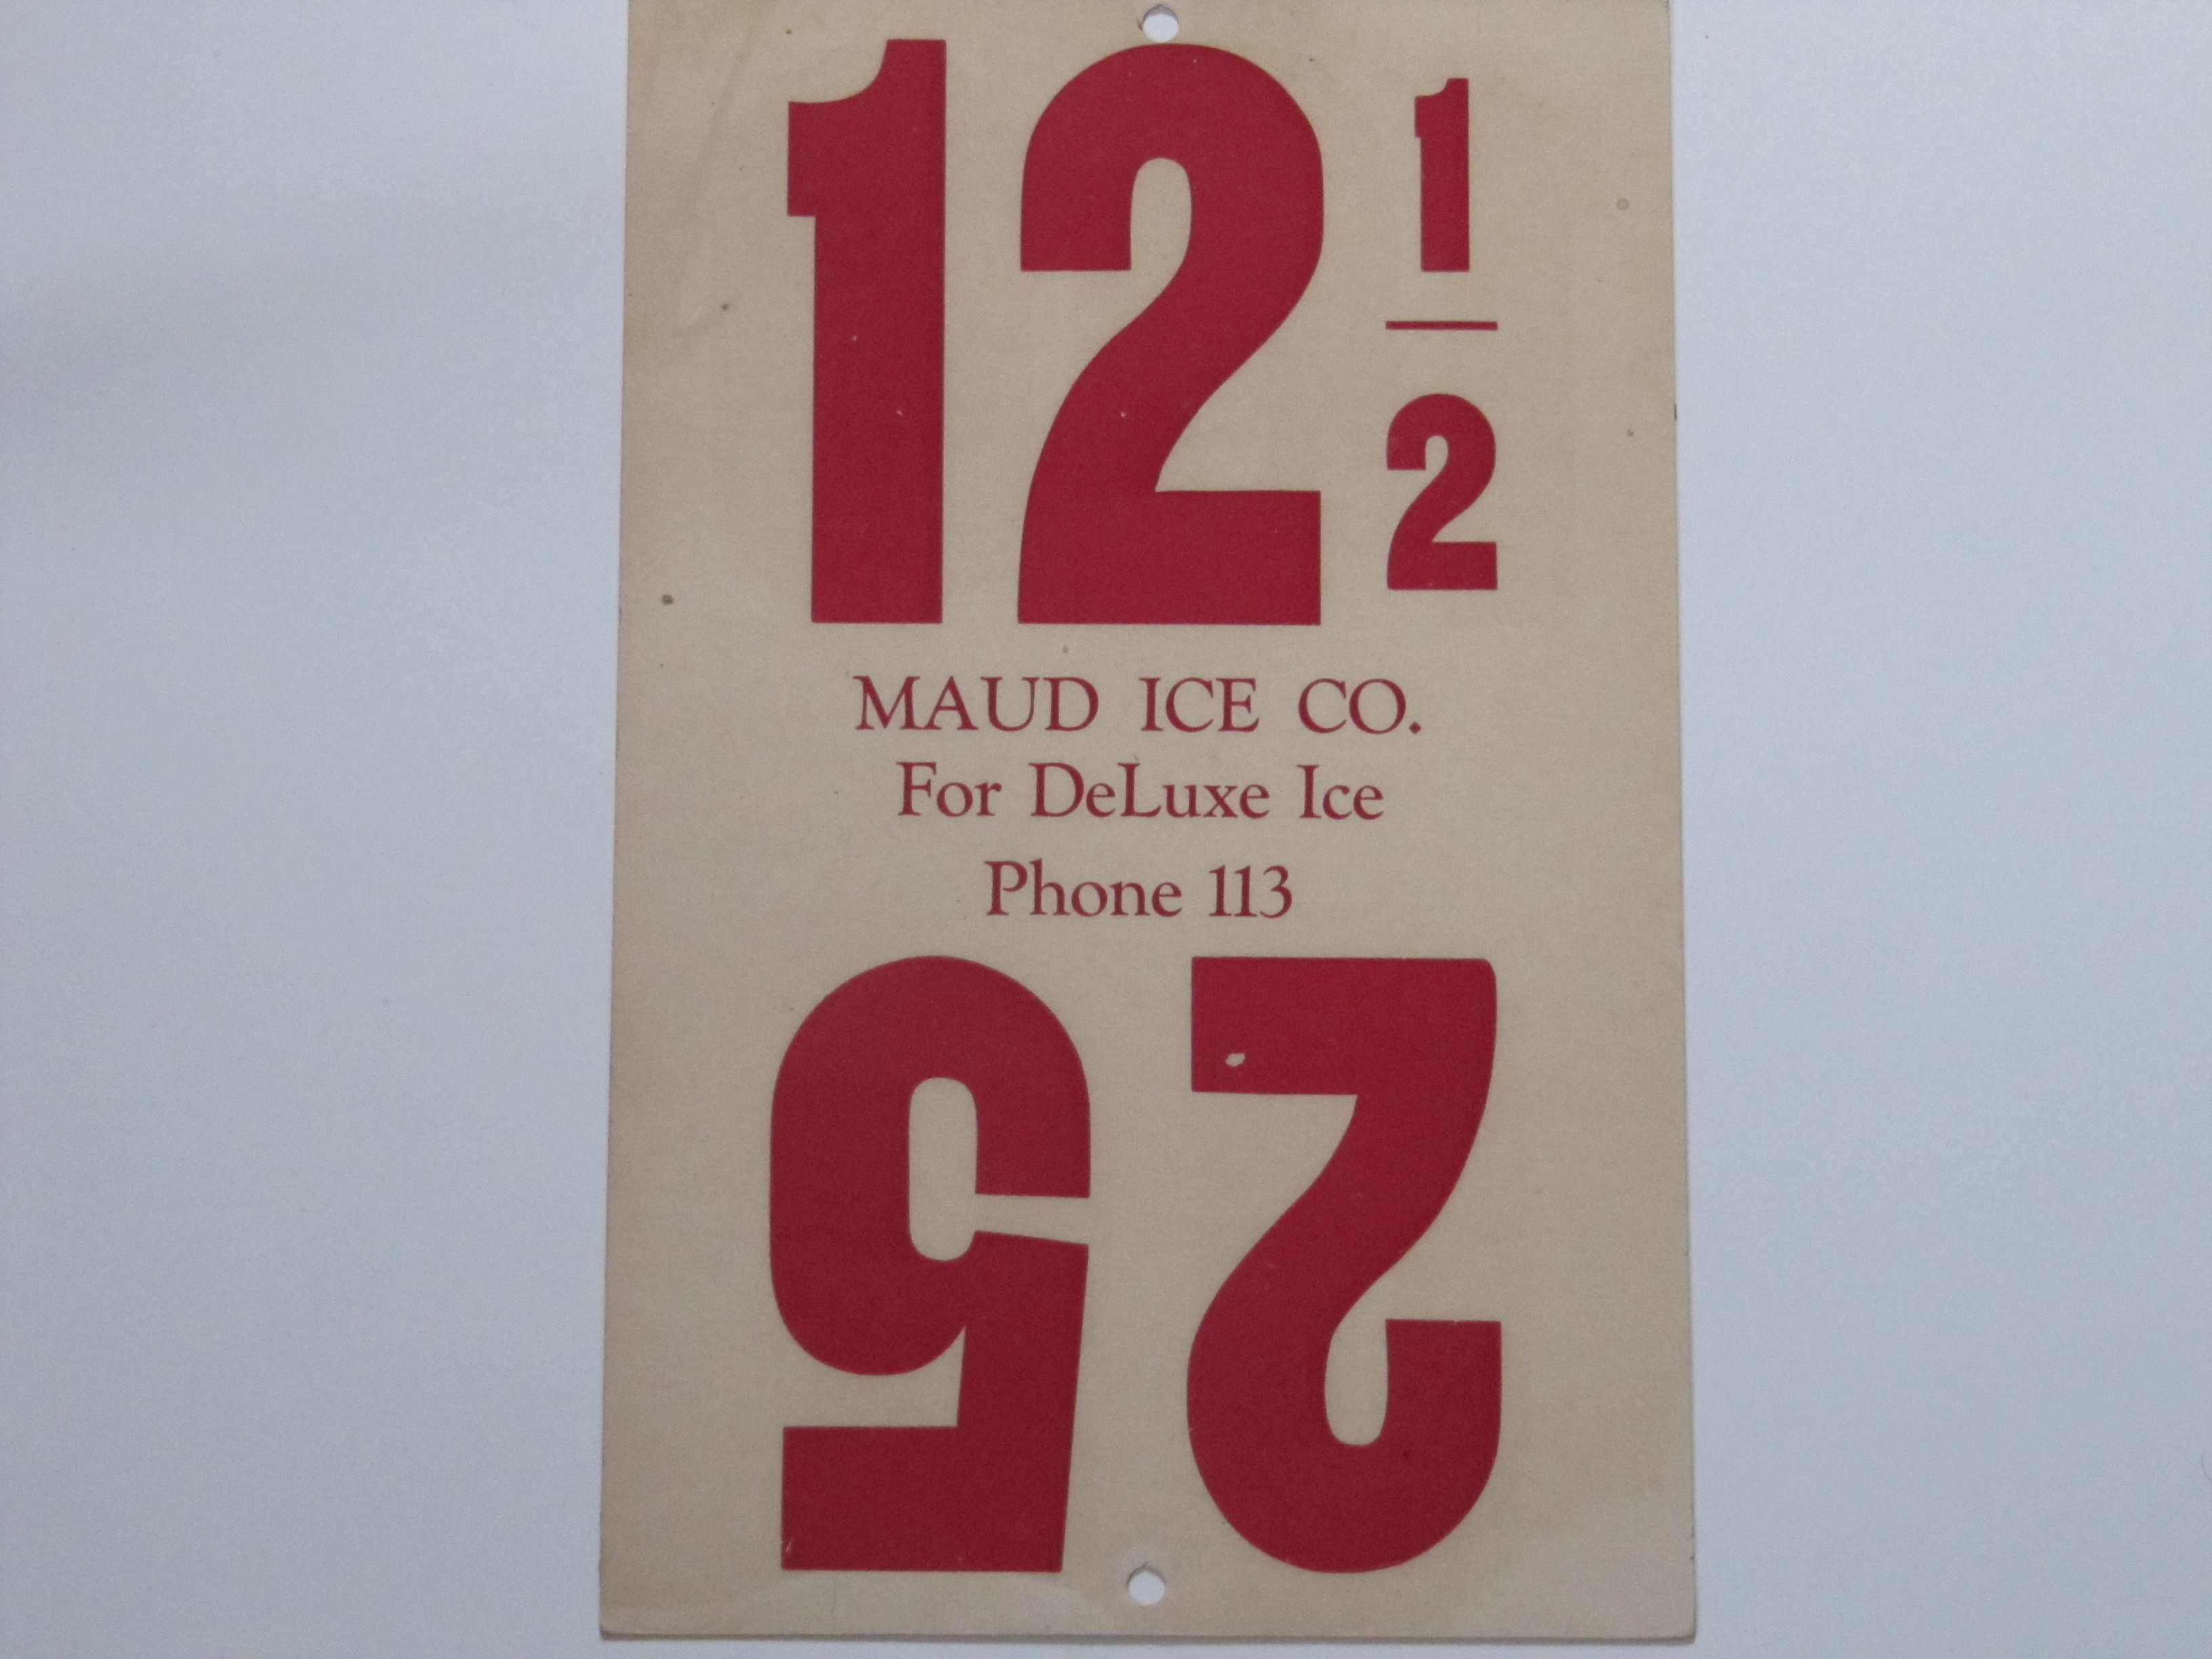 Maud Ice Co.